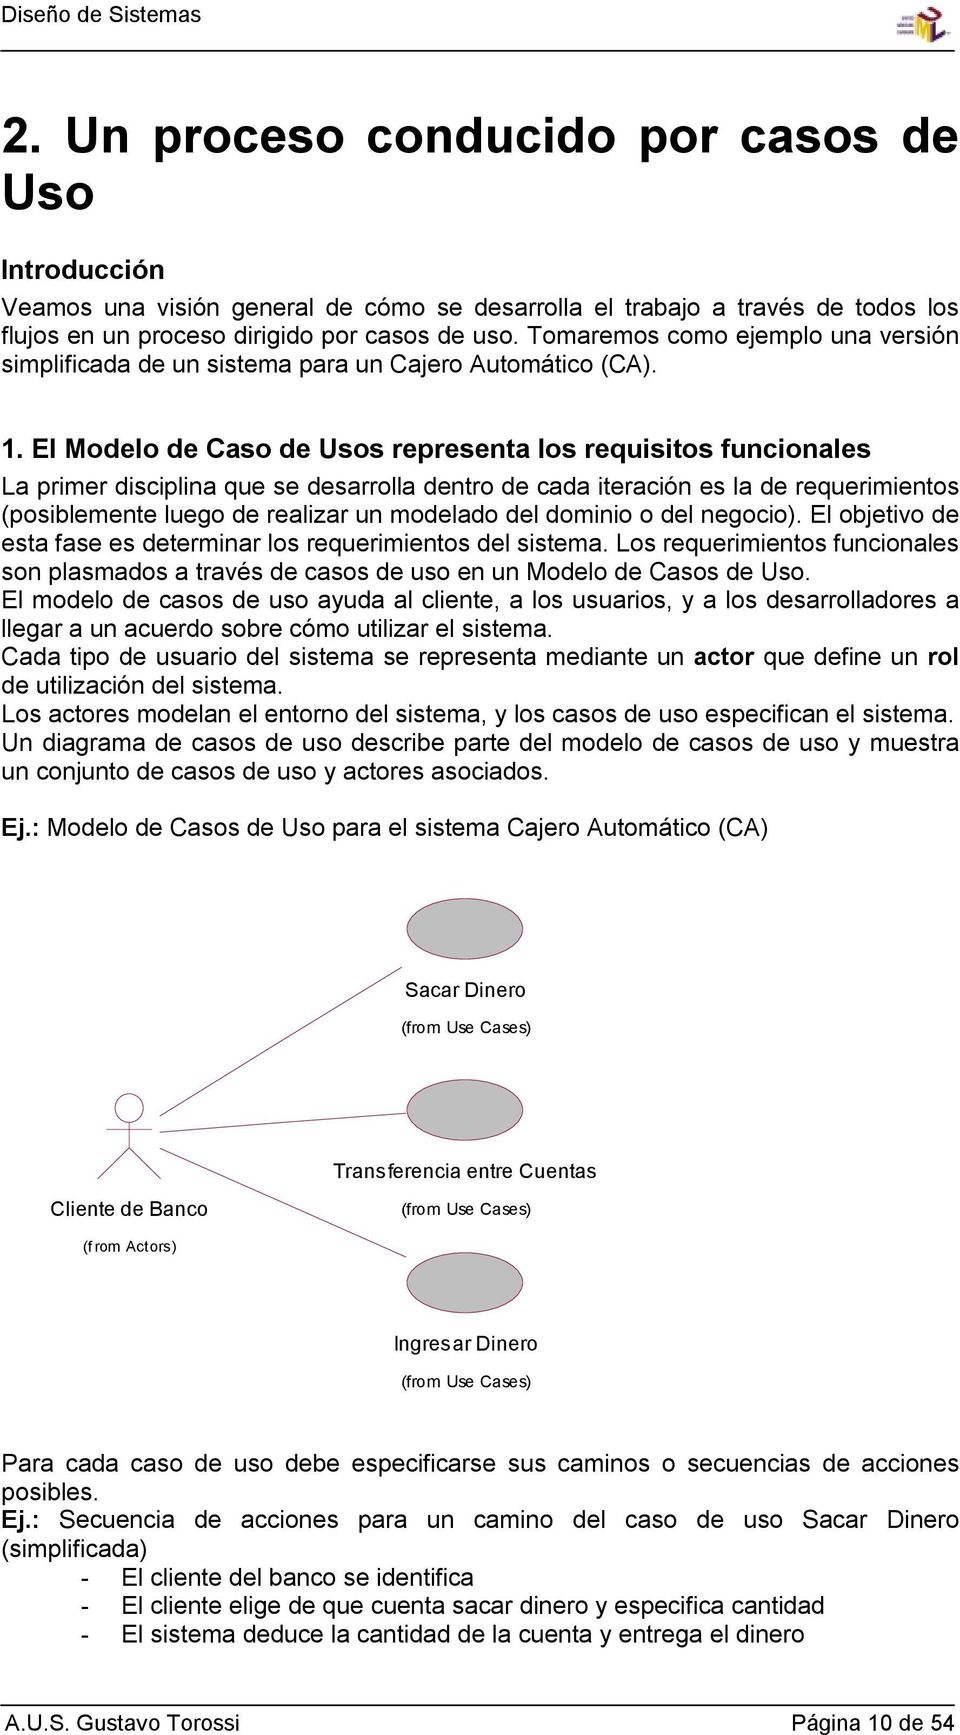 El Modelo de Caso de Usos representa los requisitos funcionales La primer disciplina que se desarrolla dentro de cada iteración es la de requerimientos (posiblemente luego de realizar un modelado del